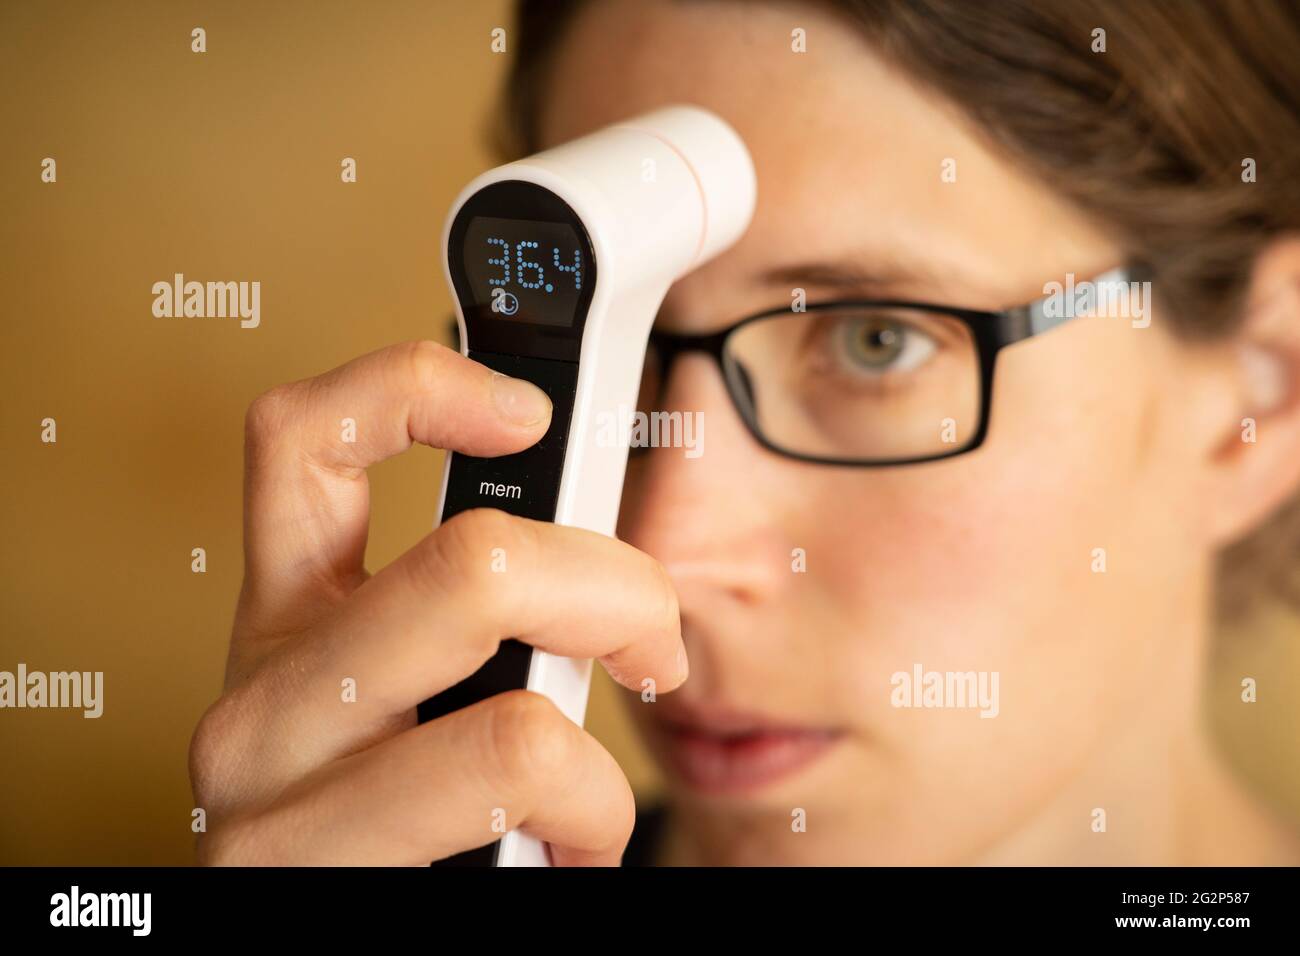 Una giovane donna tra i suoi trent'anni che ha la diagnosi di febbre prendendo la propria temperatura con un termometro digitale a infrarossi. REGNO UNITO Foto Stock